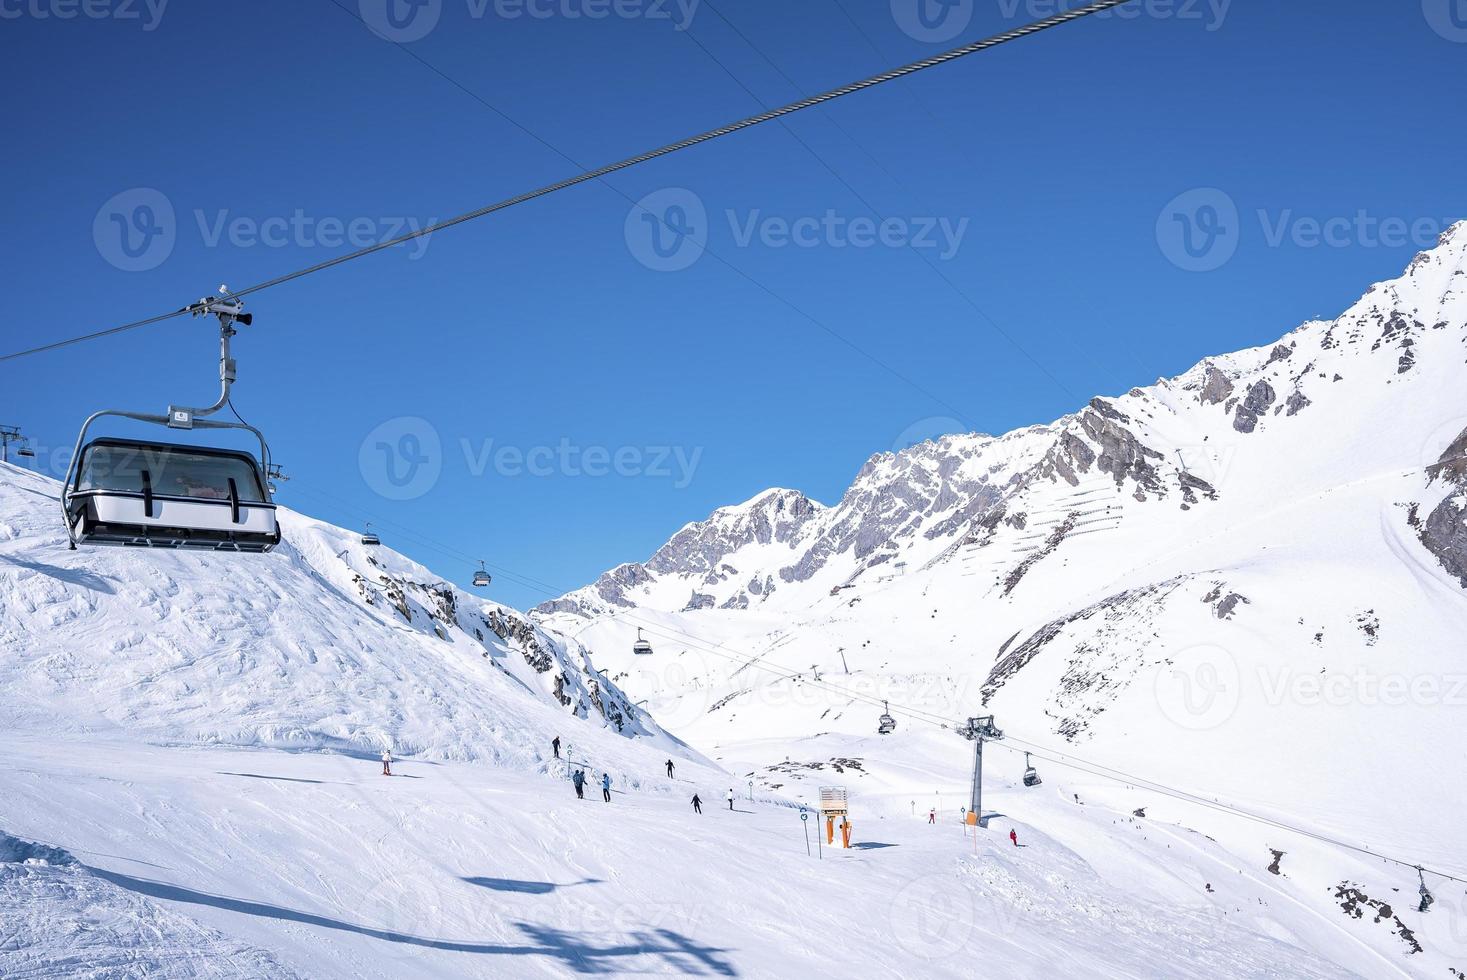 skidlift reser över snötäckta berg mot klarblå himmel foto